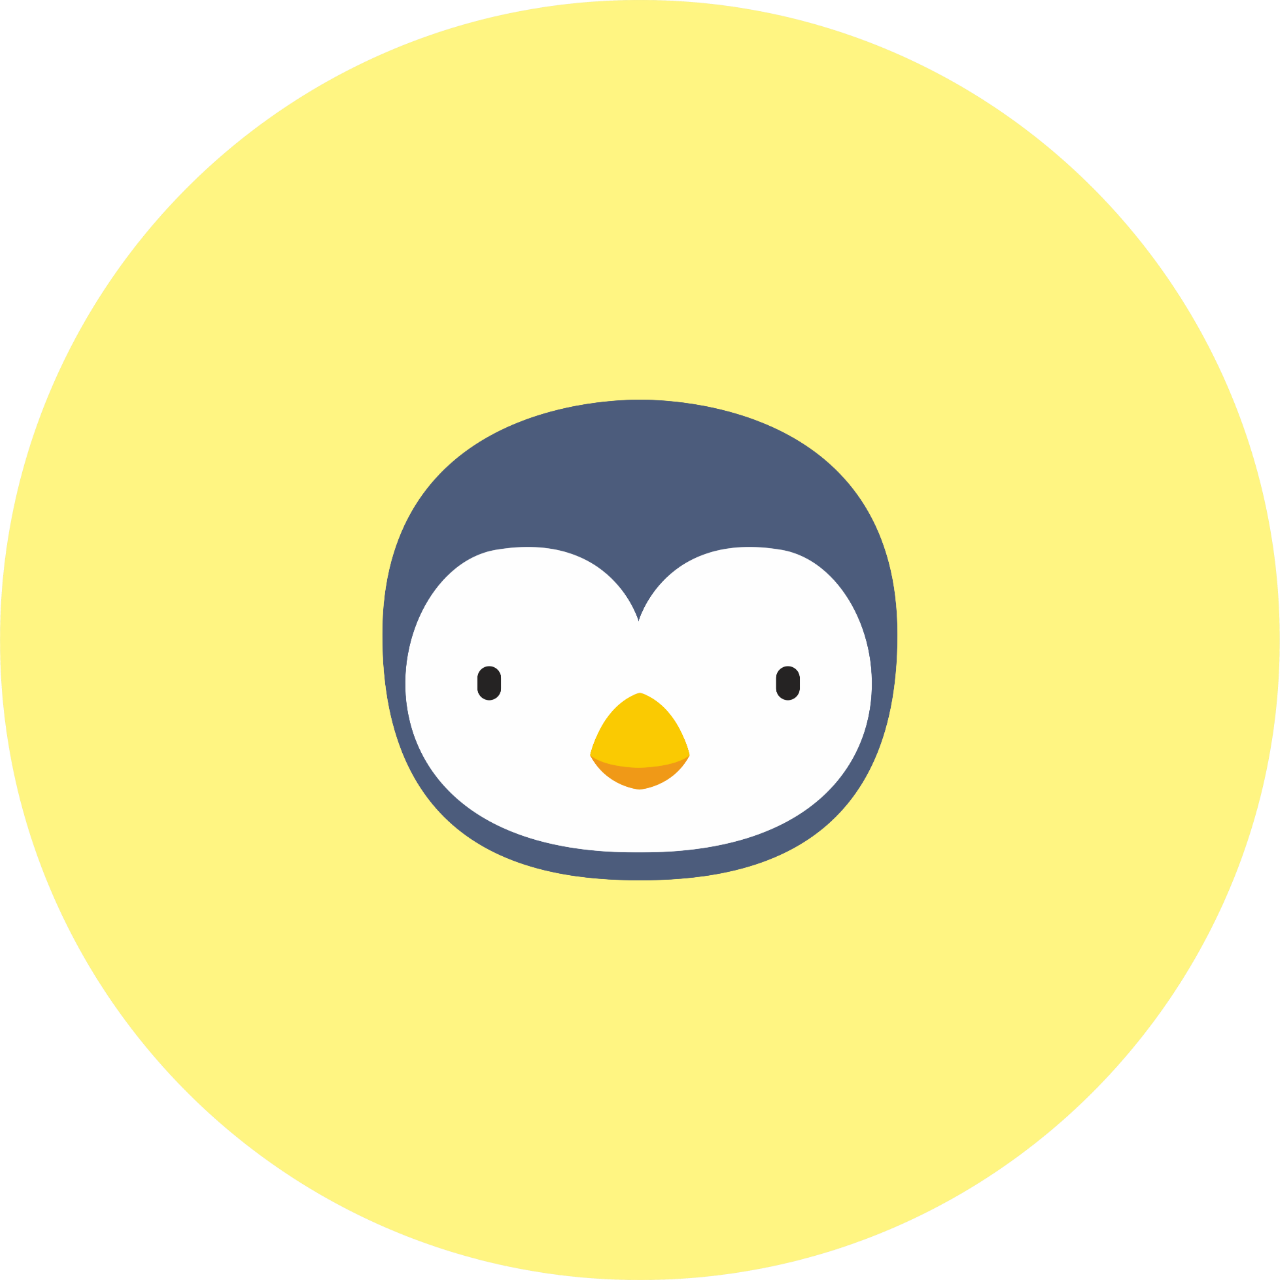 Açık sarı bir daire içinde turuncu bir gagası olan siyah beyaz renkli bir penguen başı